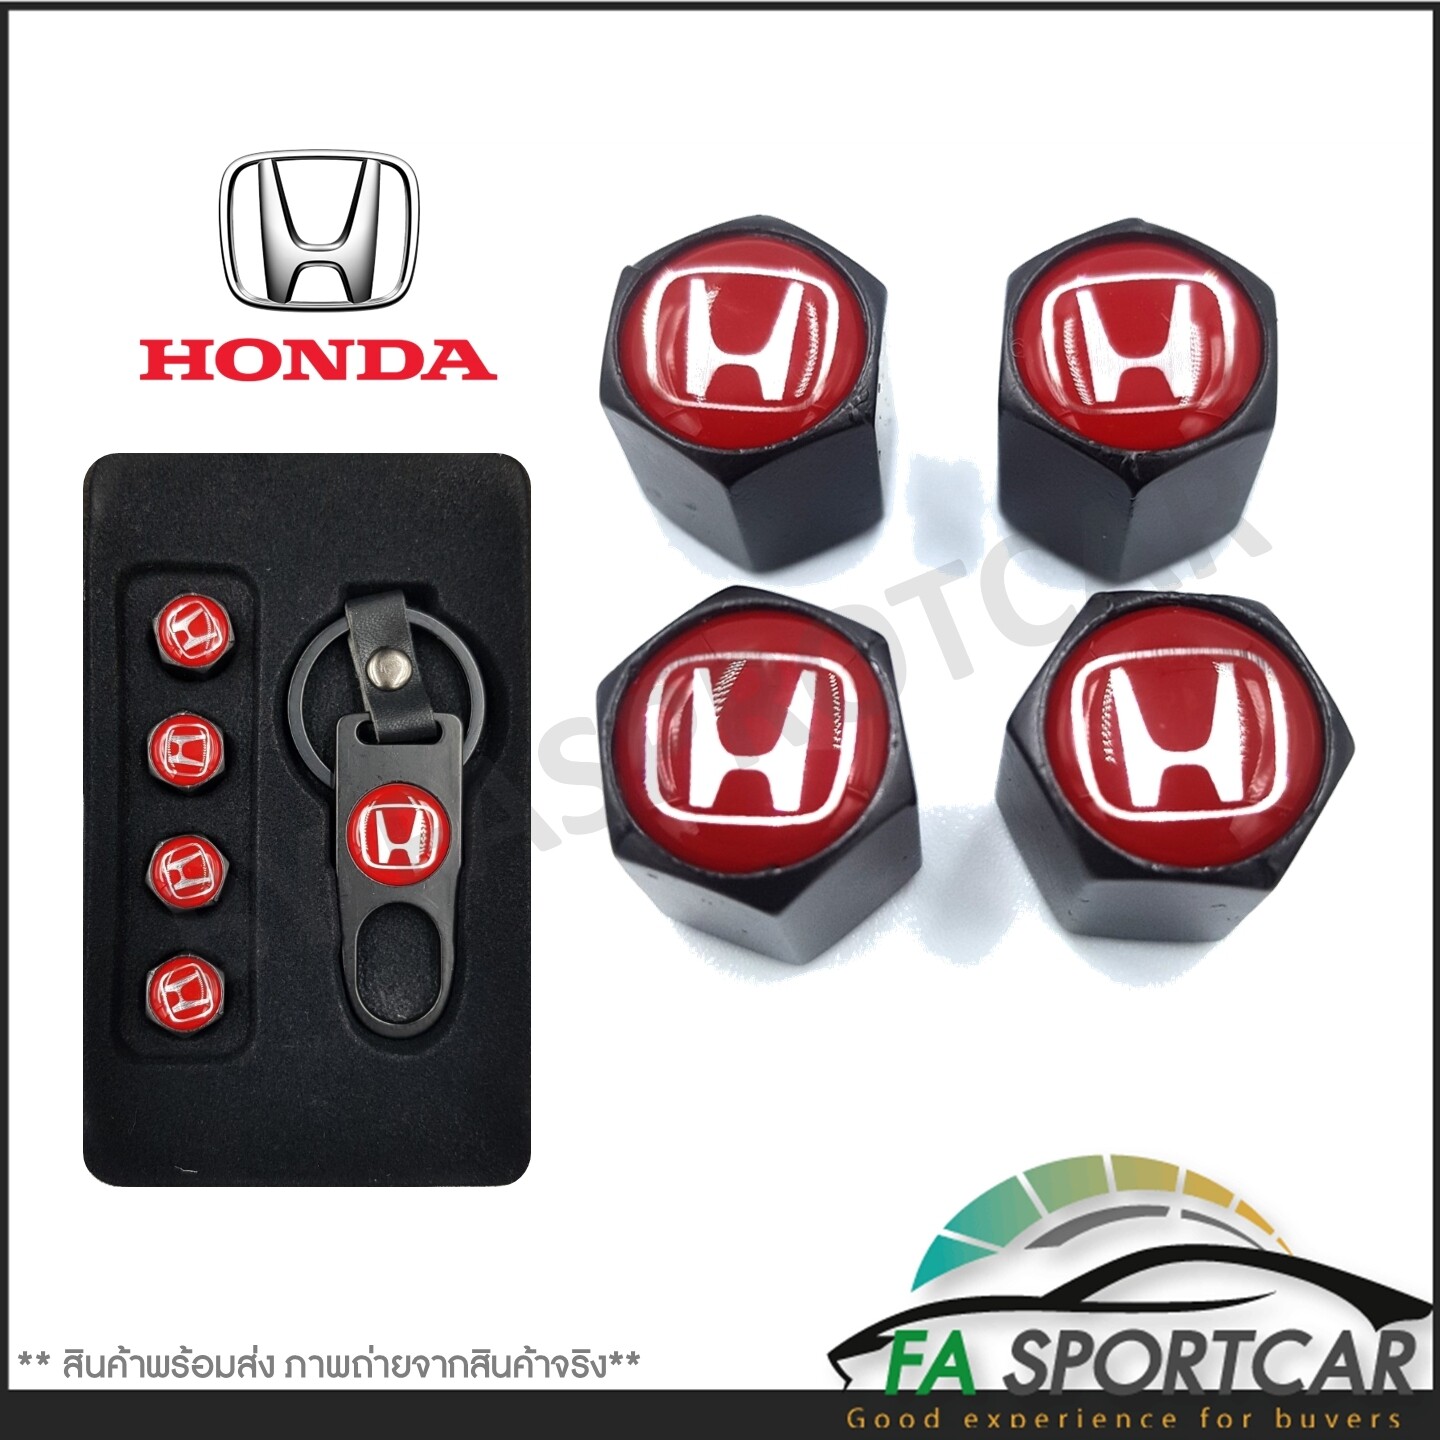 [รับประกันสินค้า] จุกลมยางรถยนต์ พร้อมโลโก้ จุกปิดลมยางพร้อมประแจ ฝาปิดจุกลม ยางรถยนต์ Honda 1 ชุดสีแดง (4 อัน) - Car Tire Valve Caps